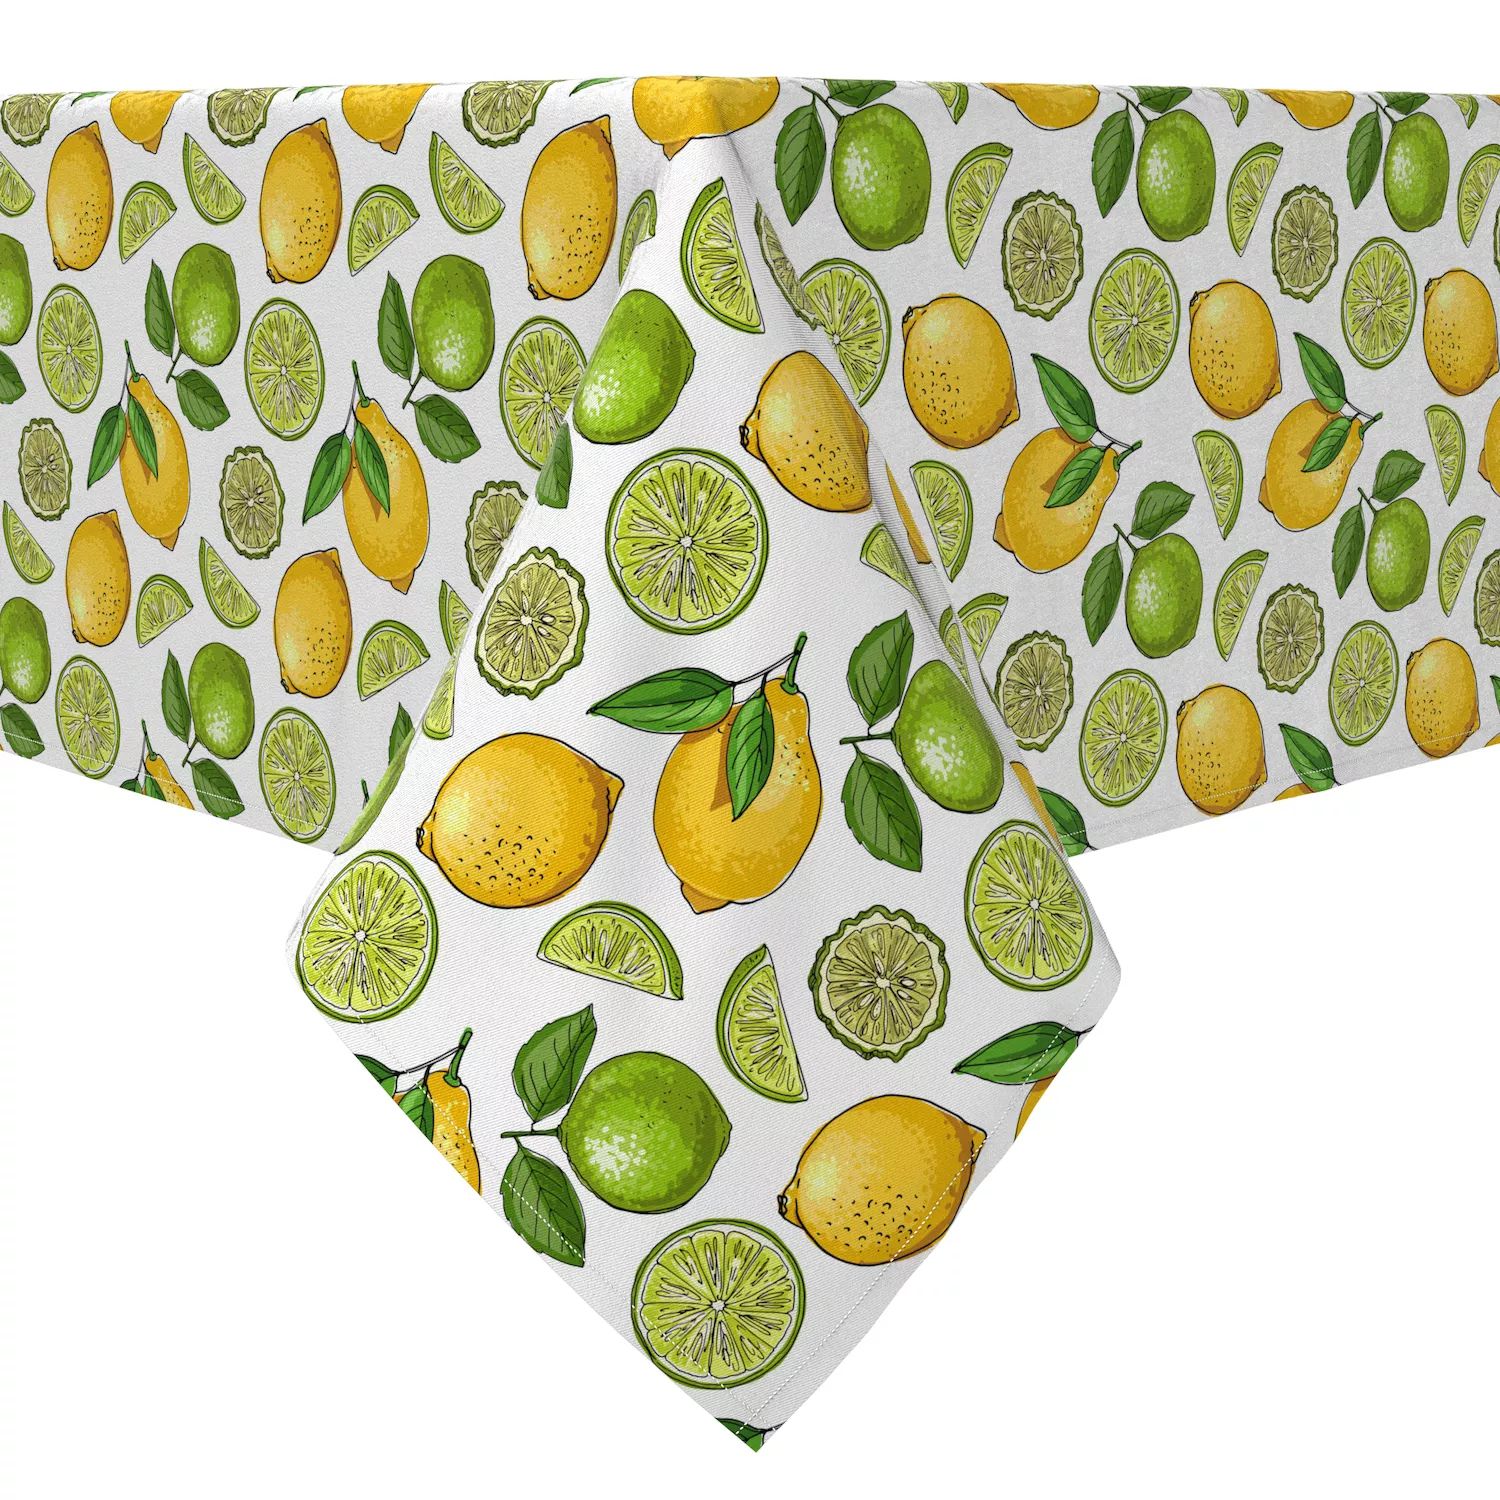 Прямоугольная скатерть, 100% хлопок, лимоны и лаймы скатерть лимоны прямоугольная 160x135 см цвет желтый